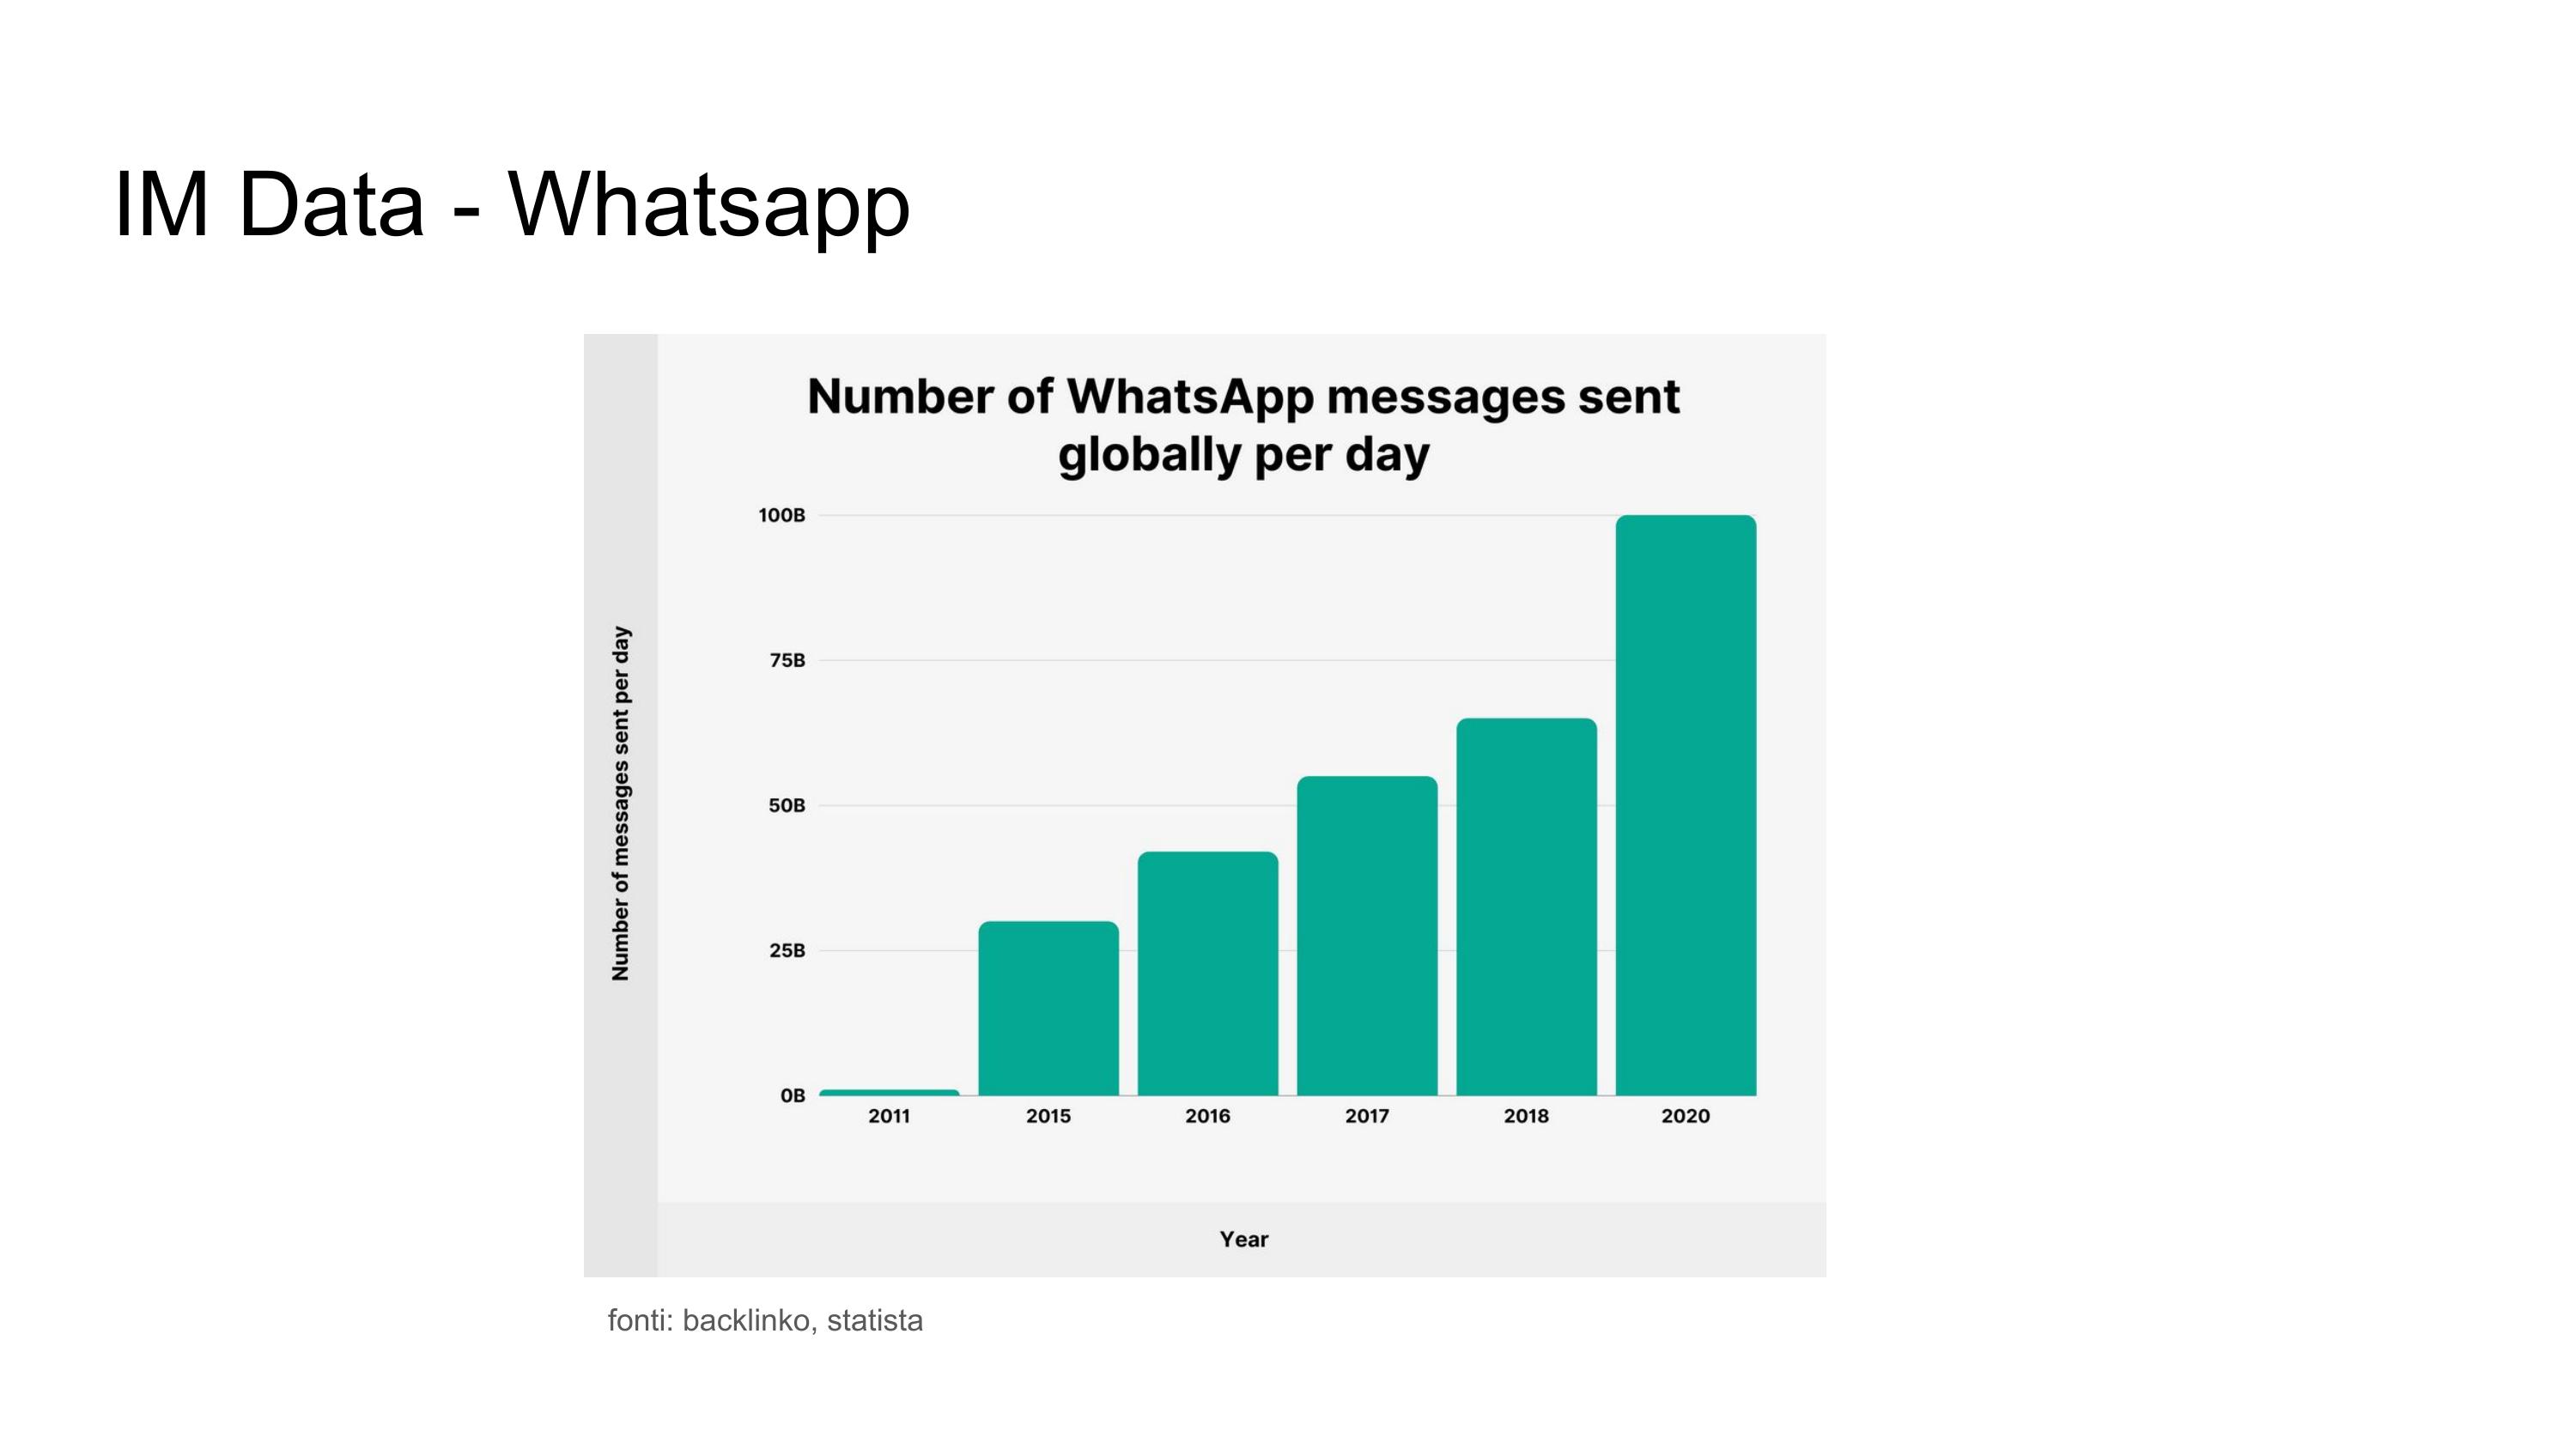 Whatsapp Data